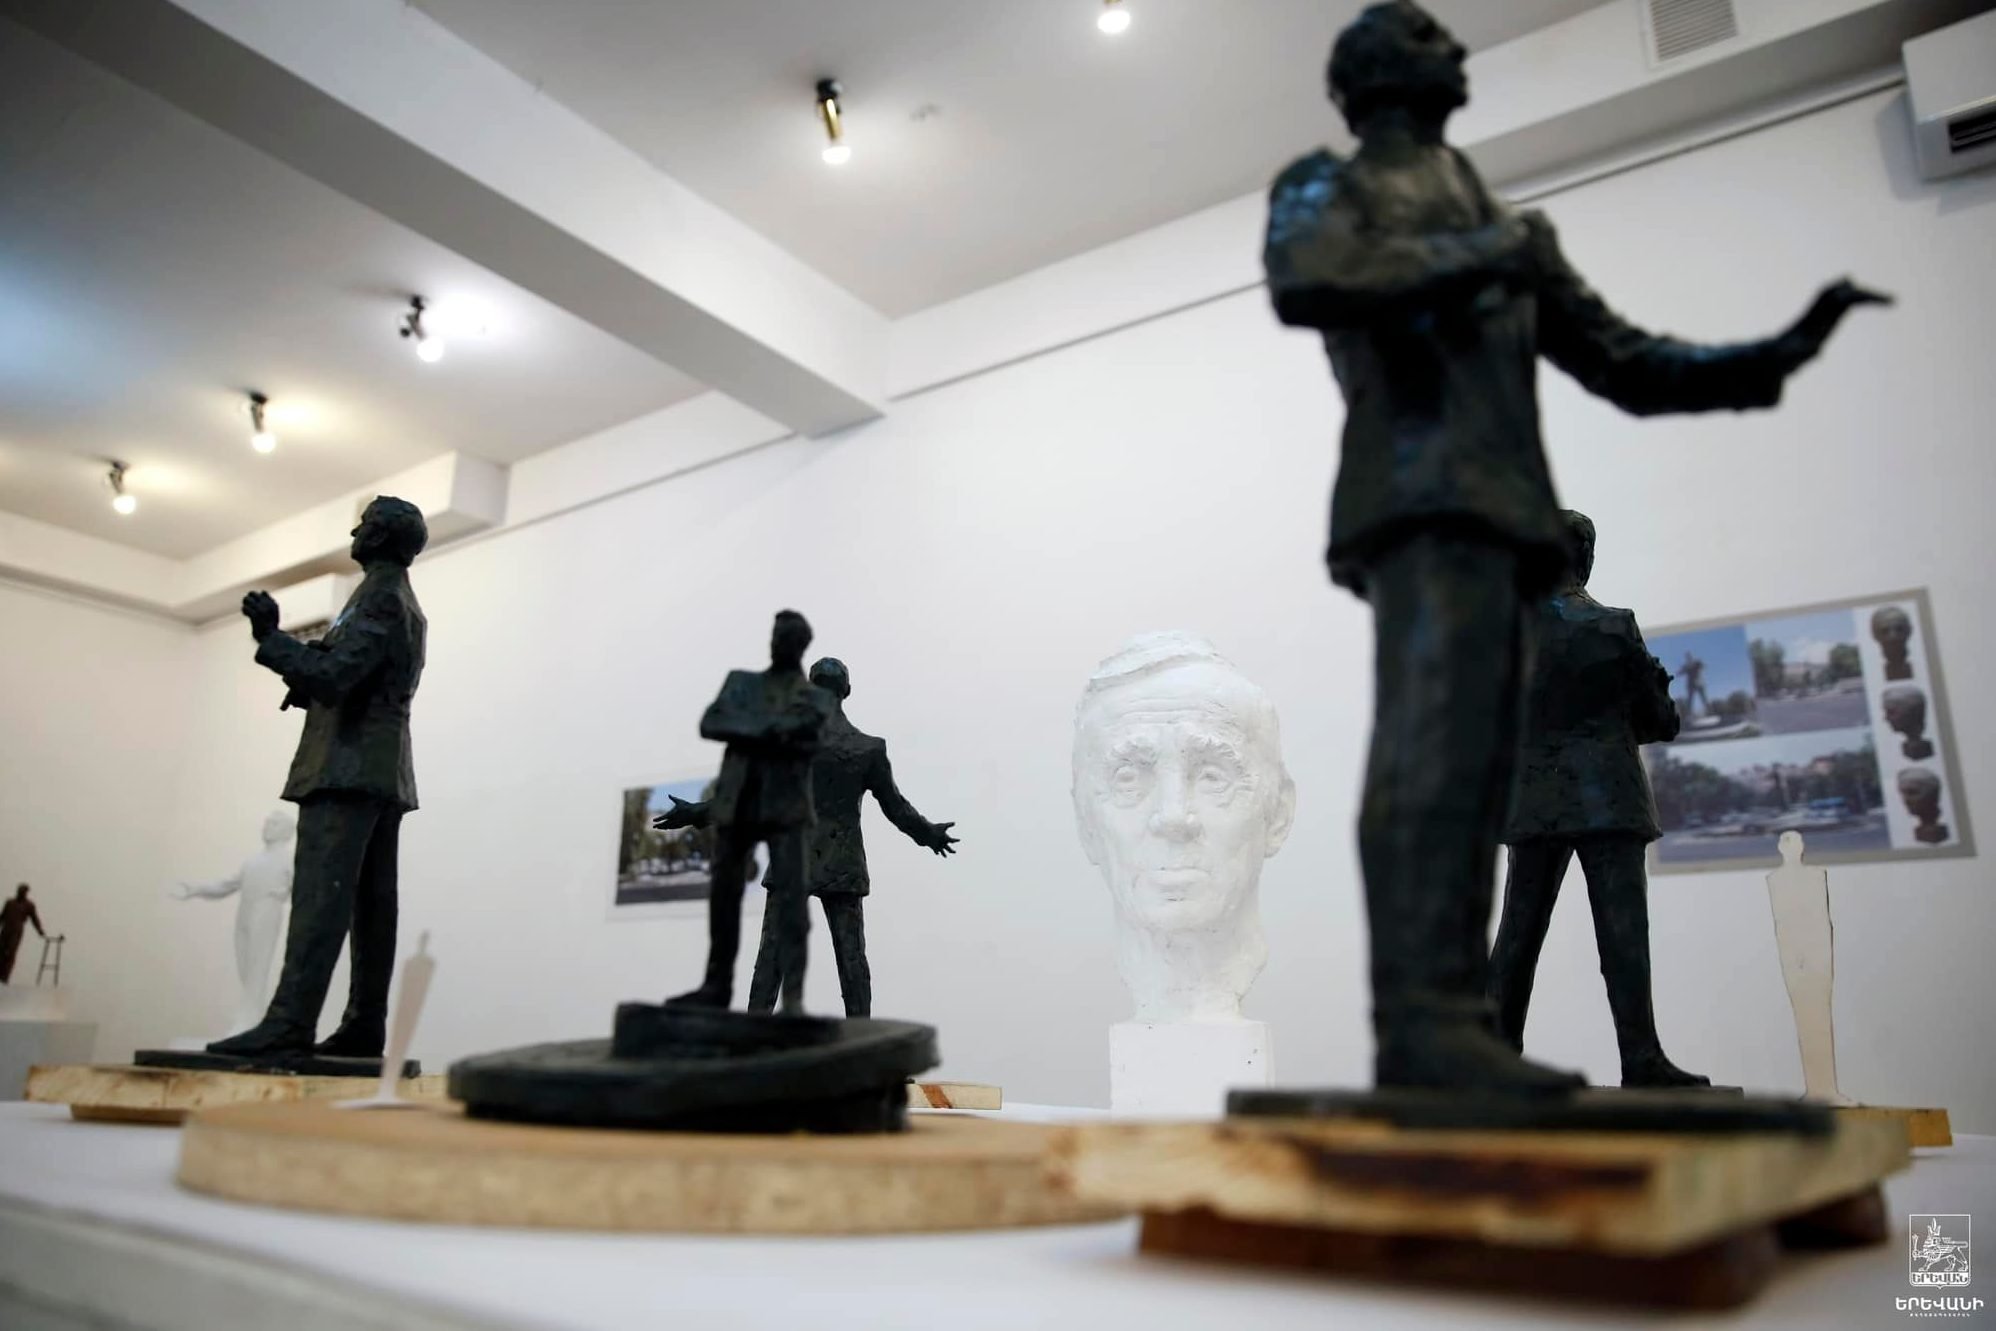 Երևանում կտեղադրվի Շառլ Ազնավուրի արձանը. հայտարարվել է հուշարձանի նախագծի բաց մրցույթ